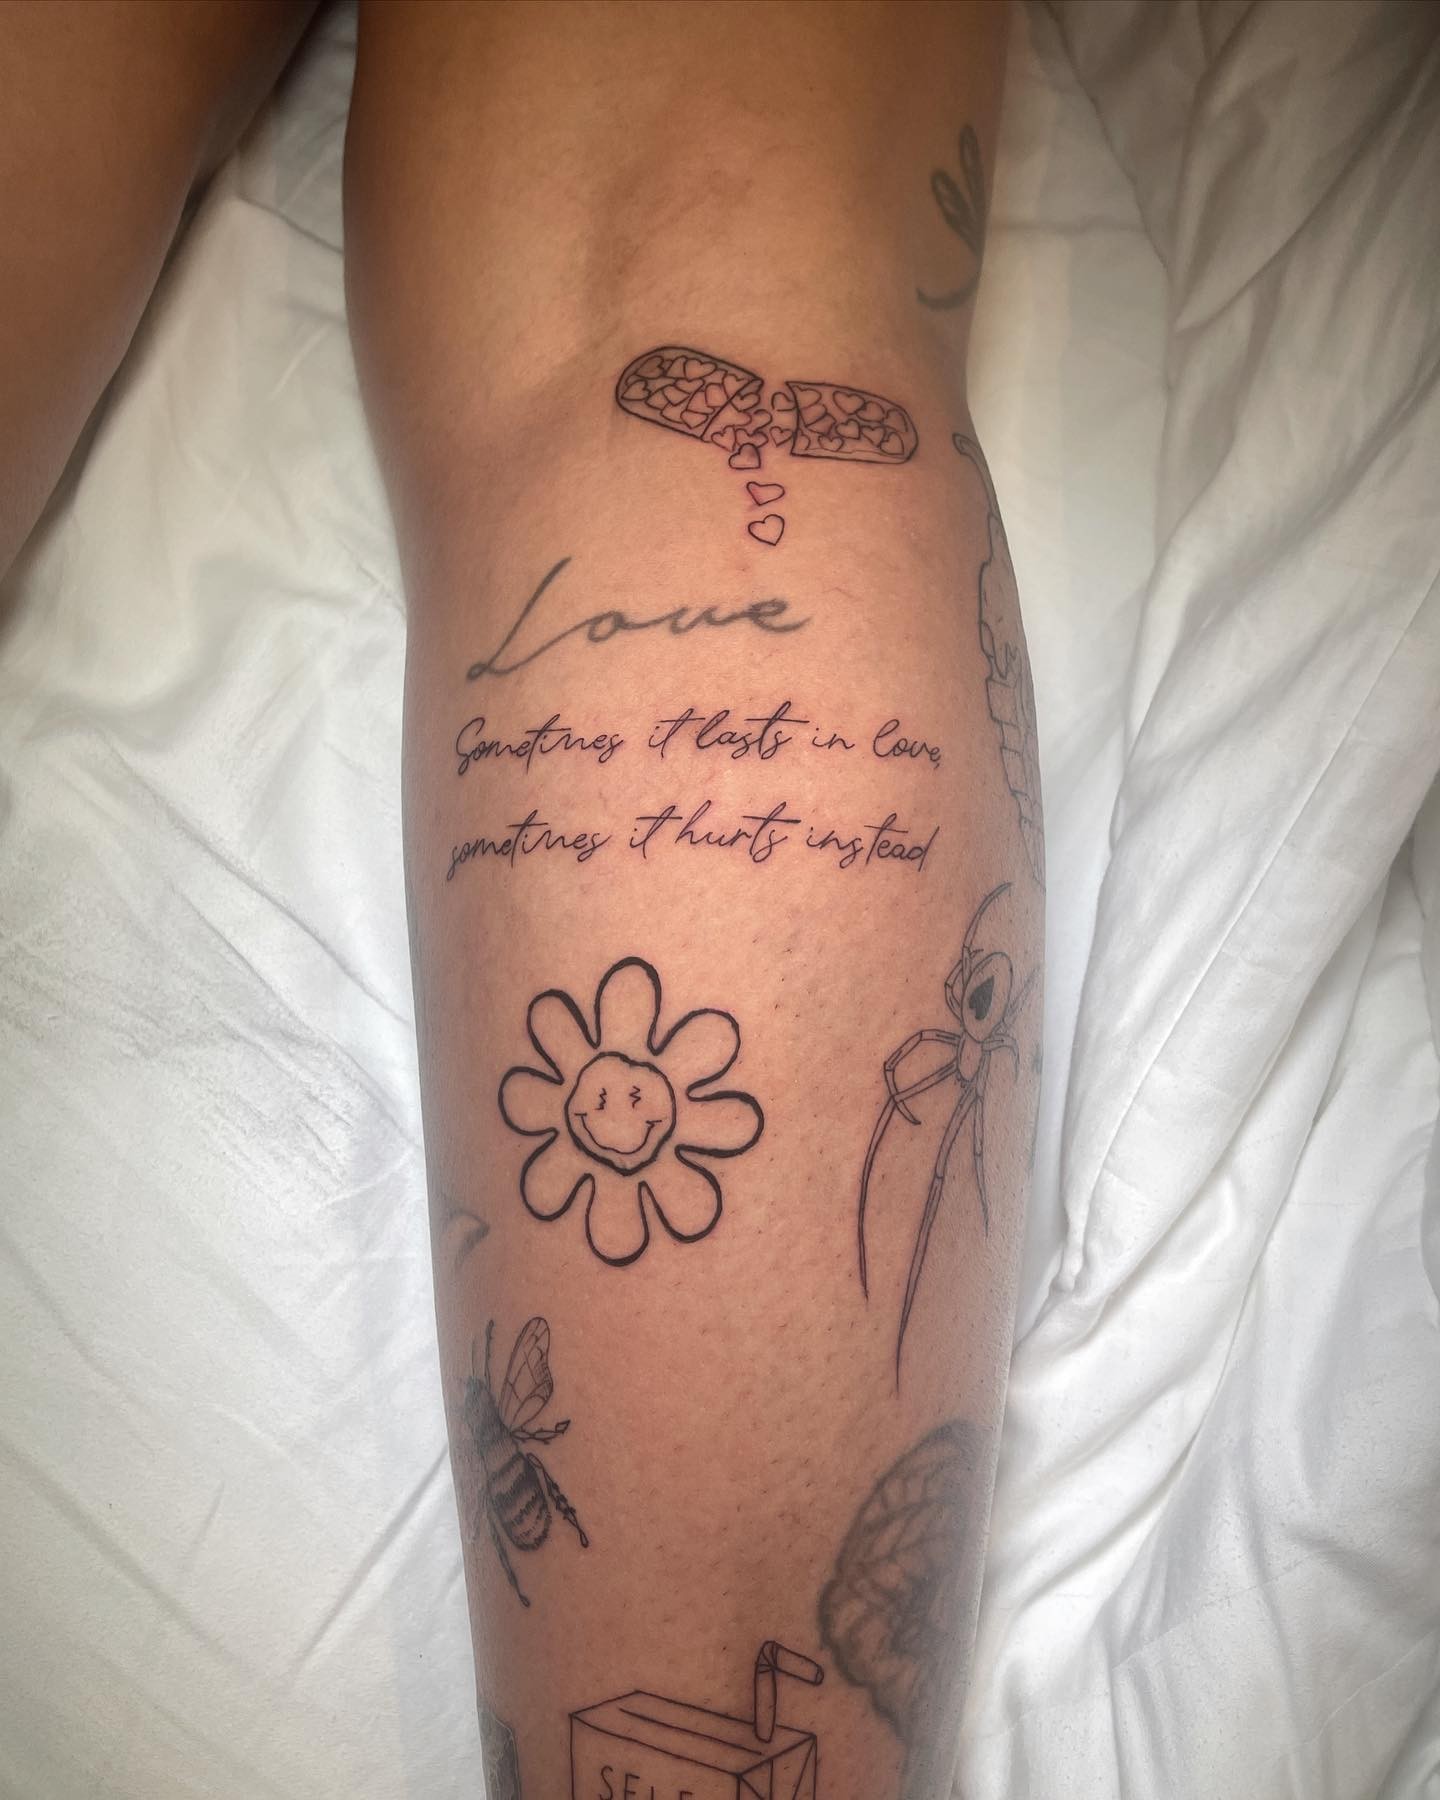 Rafaella Santos fez tatuagens na perna — Foto: Reprodução/Instagram